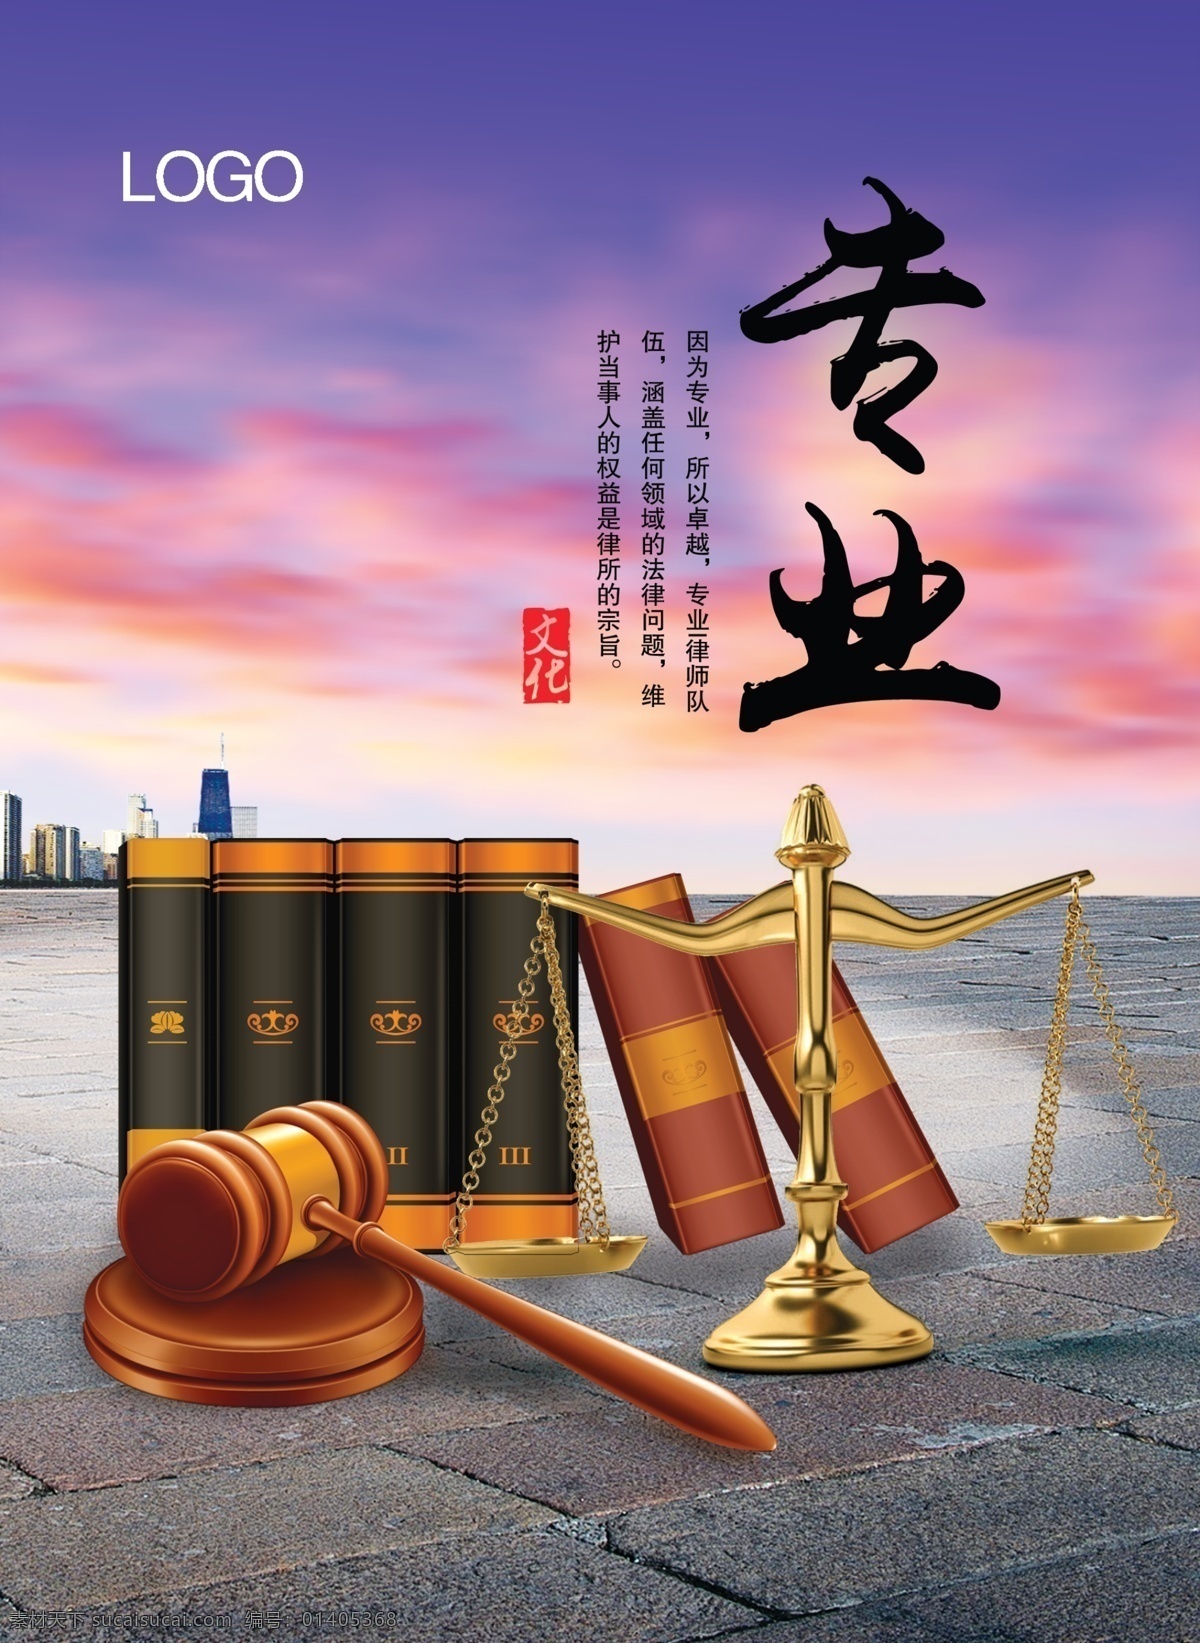 天平 法槌 书籍 法律海报 律师